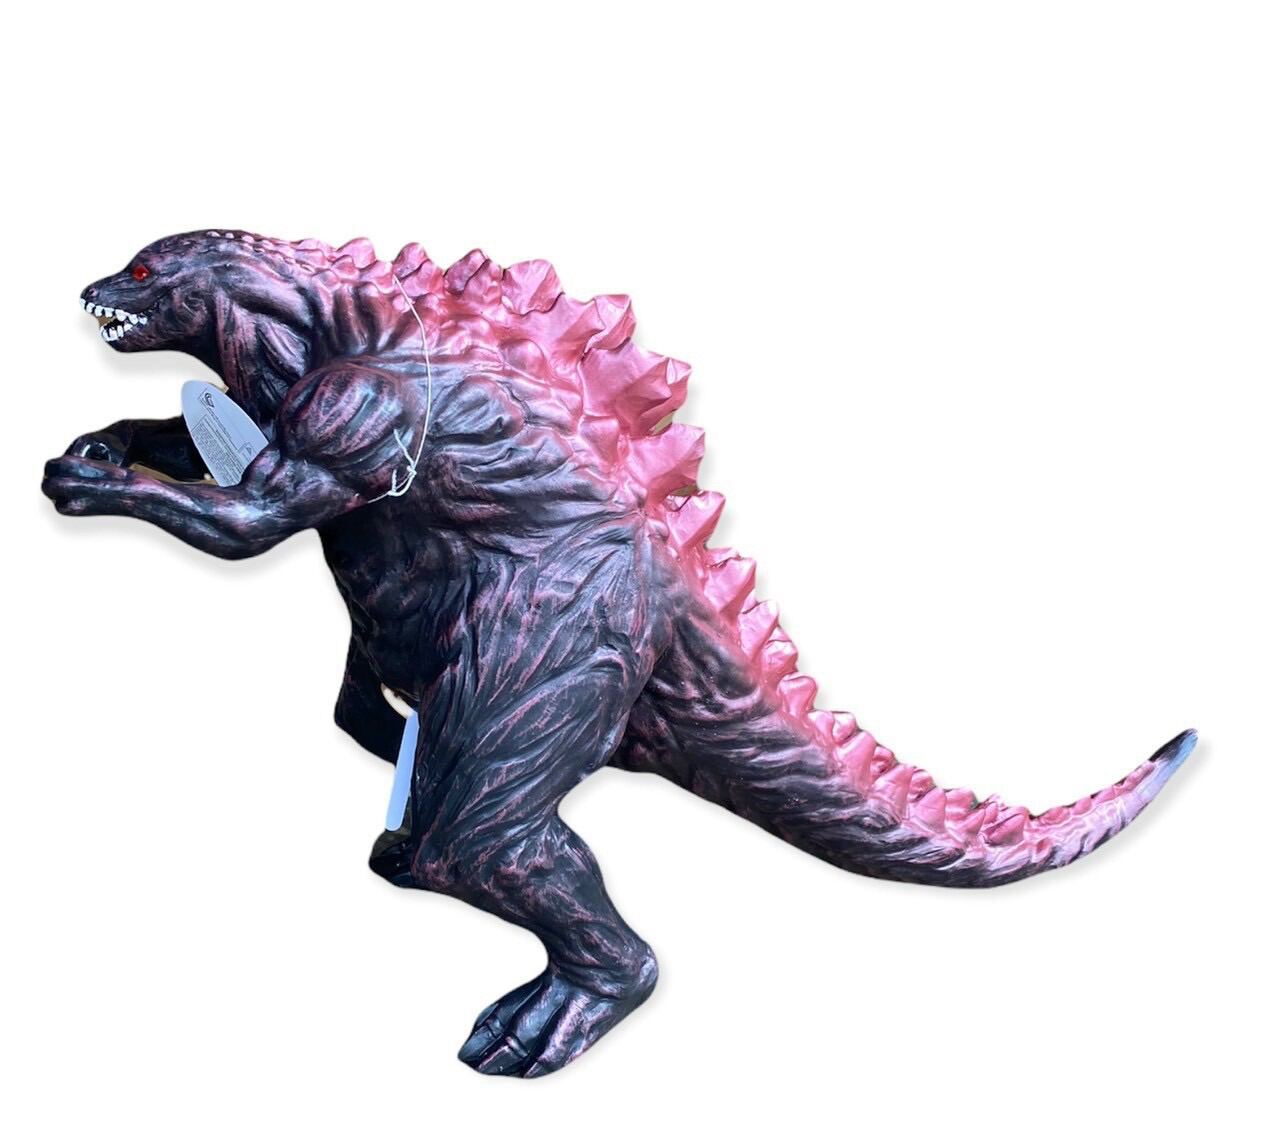 MUA 2 GIẢM 5%Mô hình Godzilla 30cm nhựa cứng có âm thanh